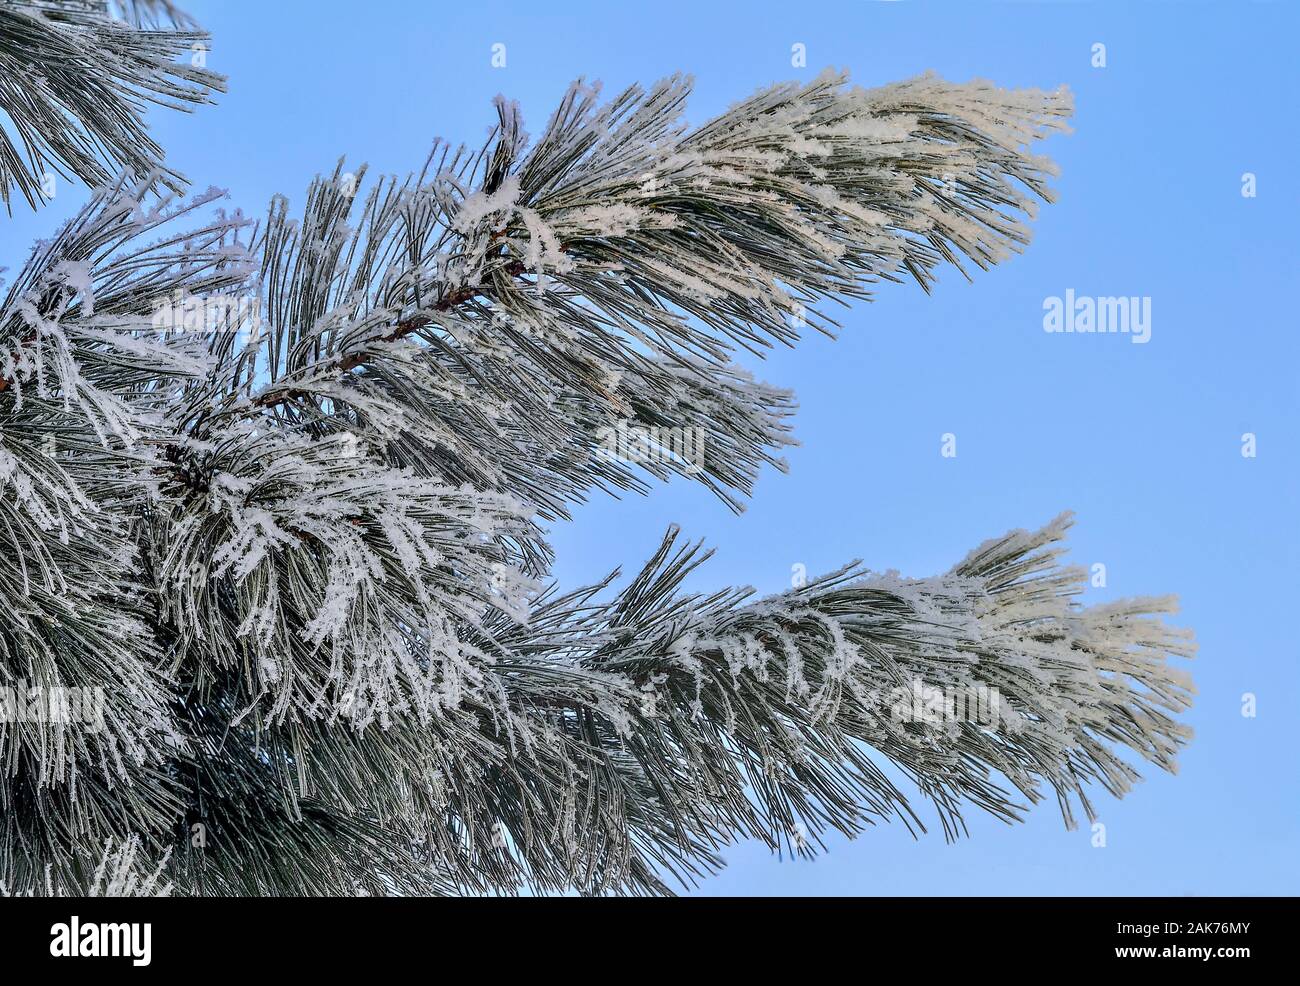 Weißer Schnee und Raureif auf Pine Tree Branch in der Nähe auf und blauer Himmel. Grüne Nadeln von Koniferen Baum mit Rauhreif im Sunshine abgedeckt. Detail o Stockfoto